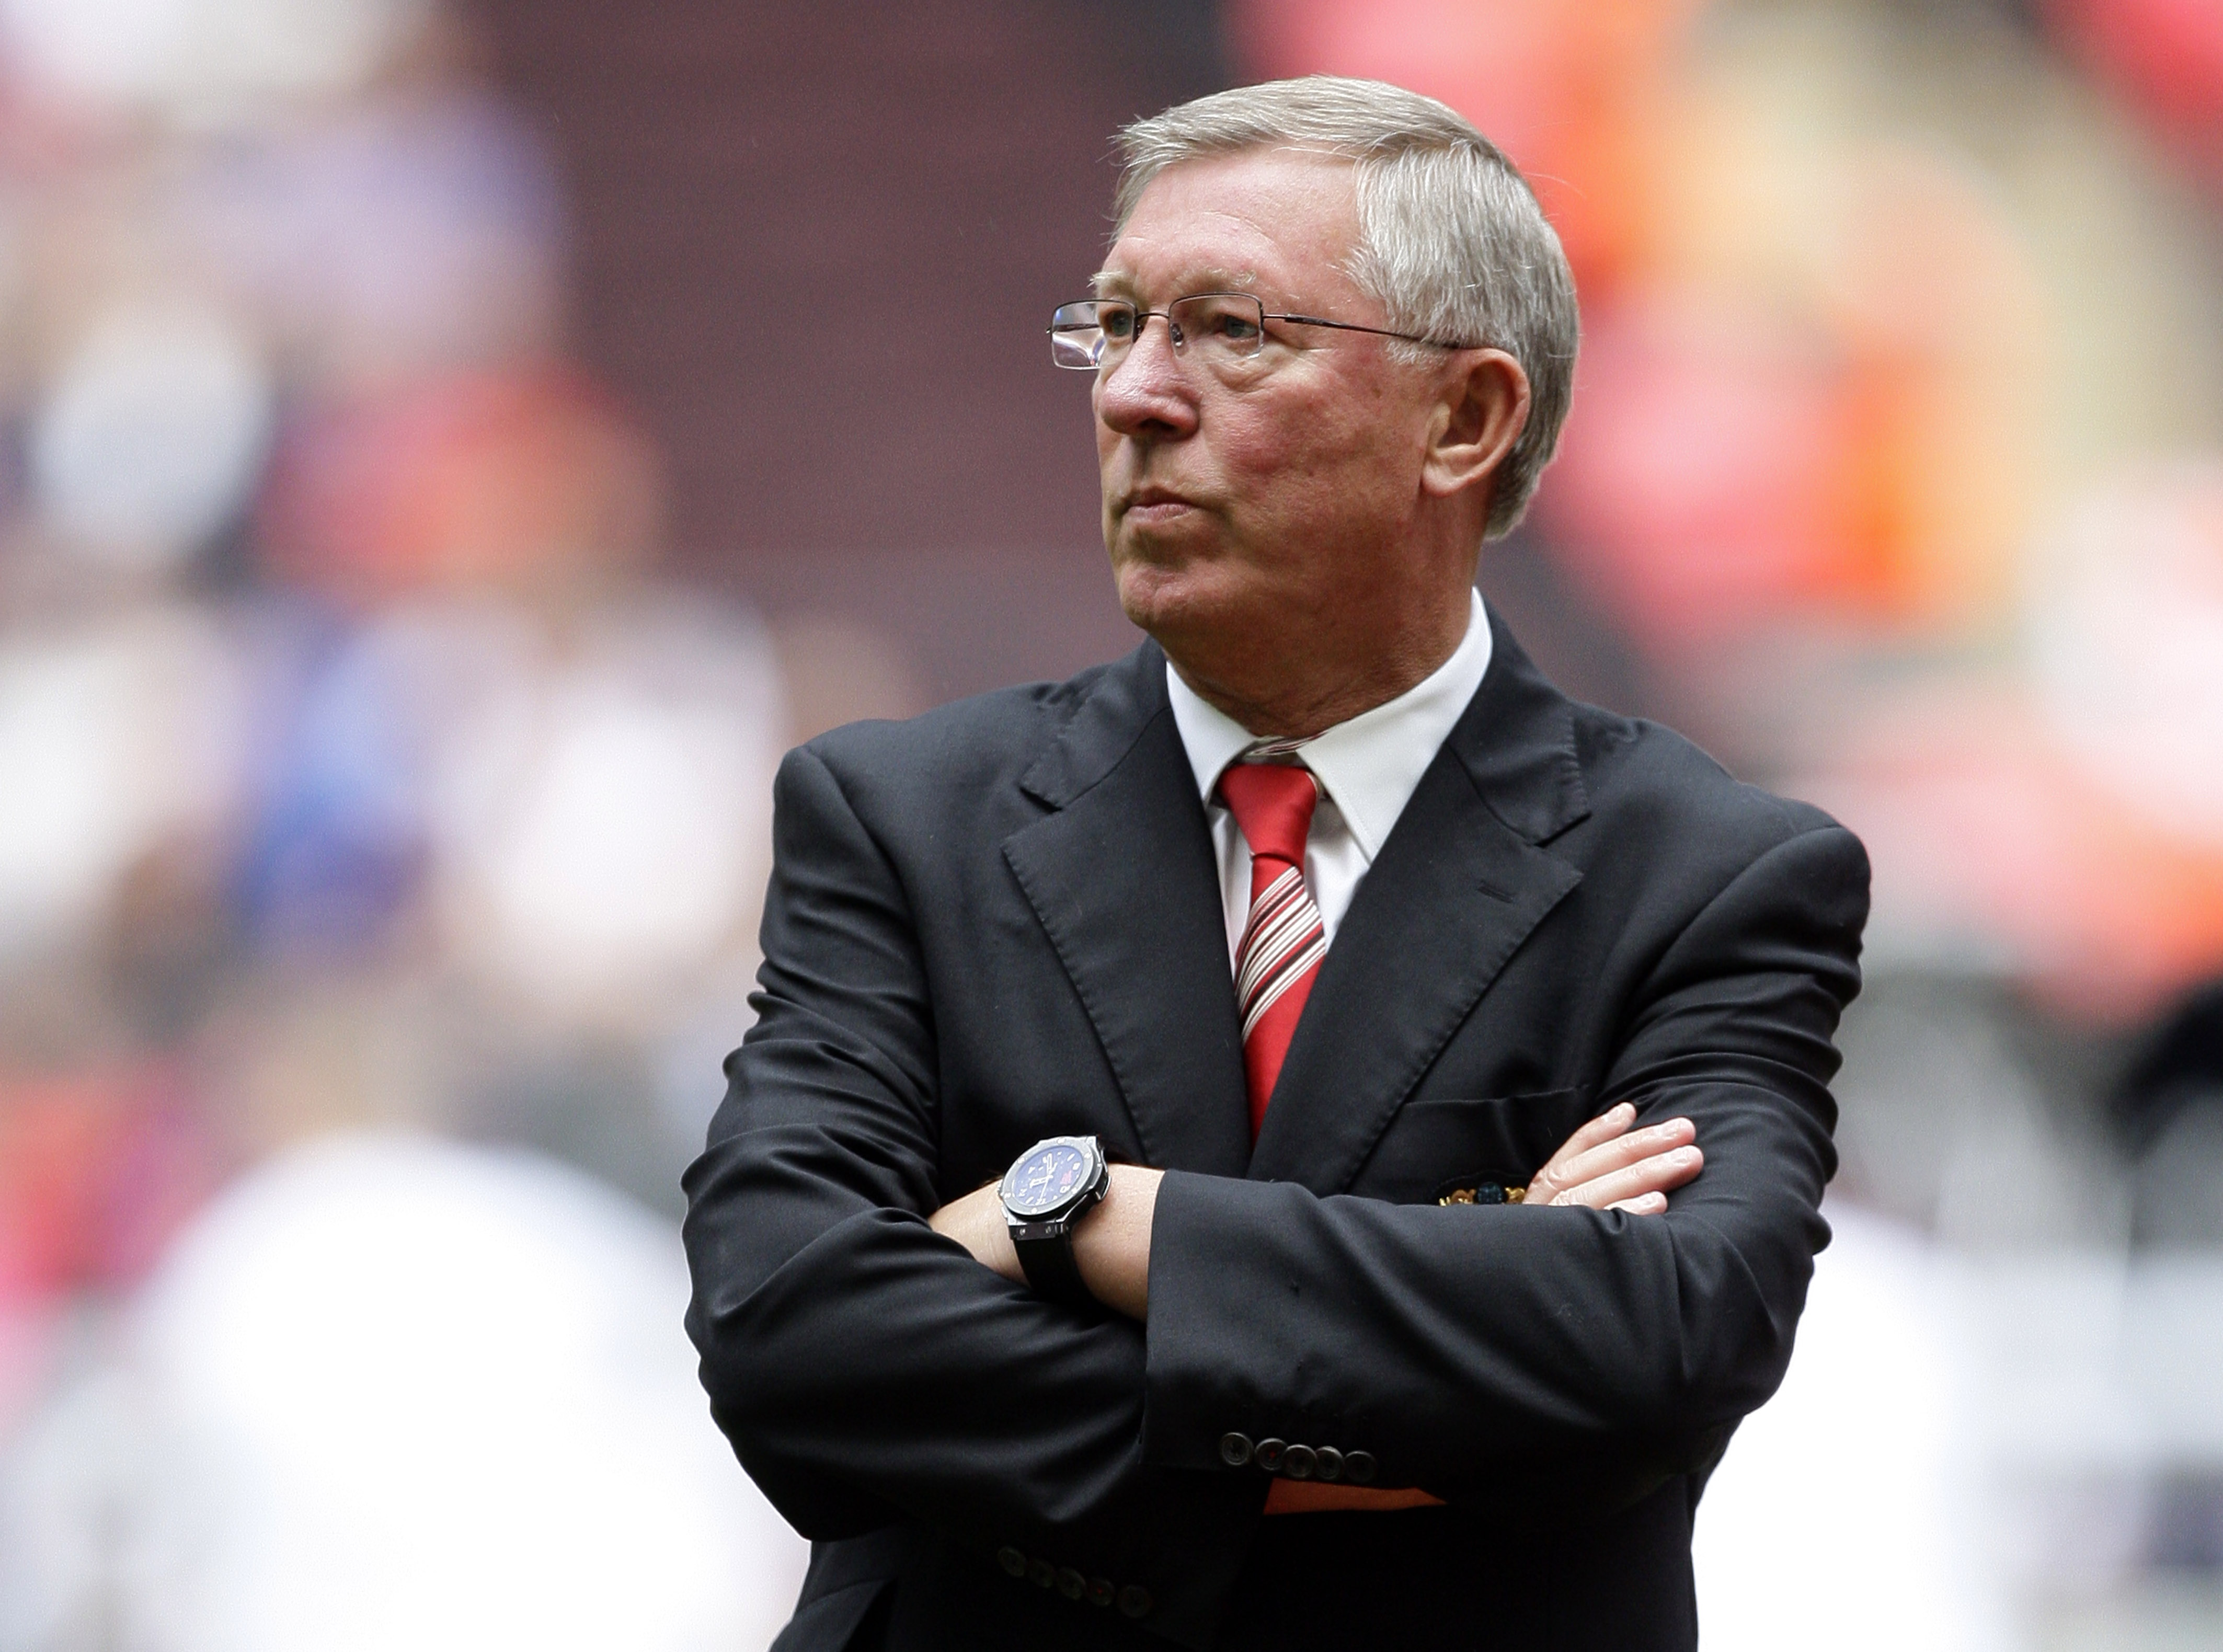 Sir Alex Ferguson var rasande på Chelseas Ashley Cole efter stormatchen på Old Trafford.